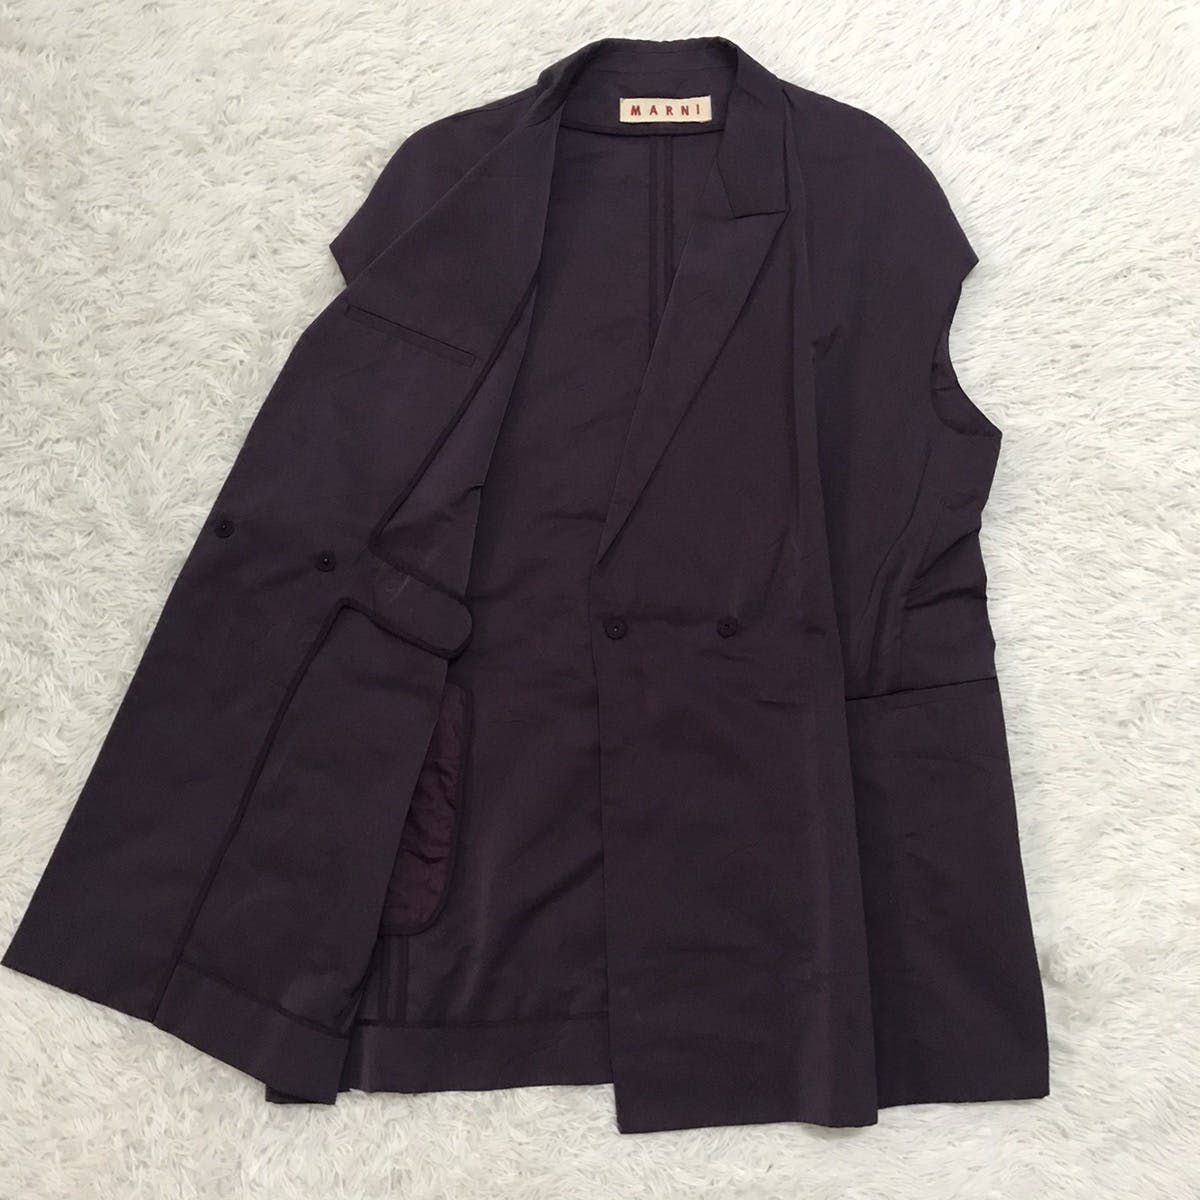 Marni Women Sleeveless Jacket Style Made in Italy - 8